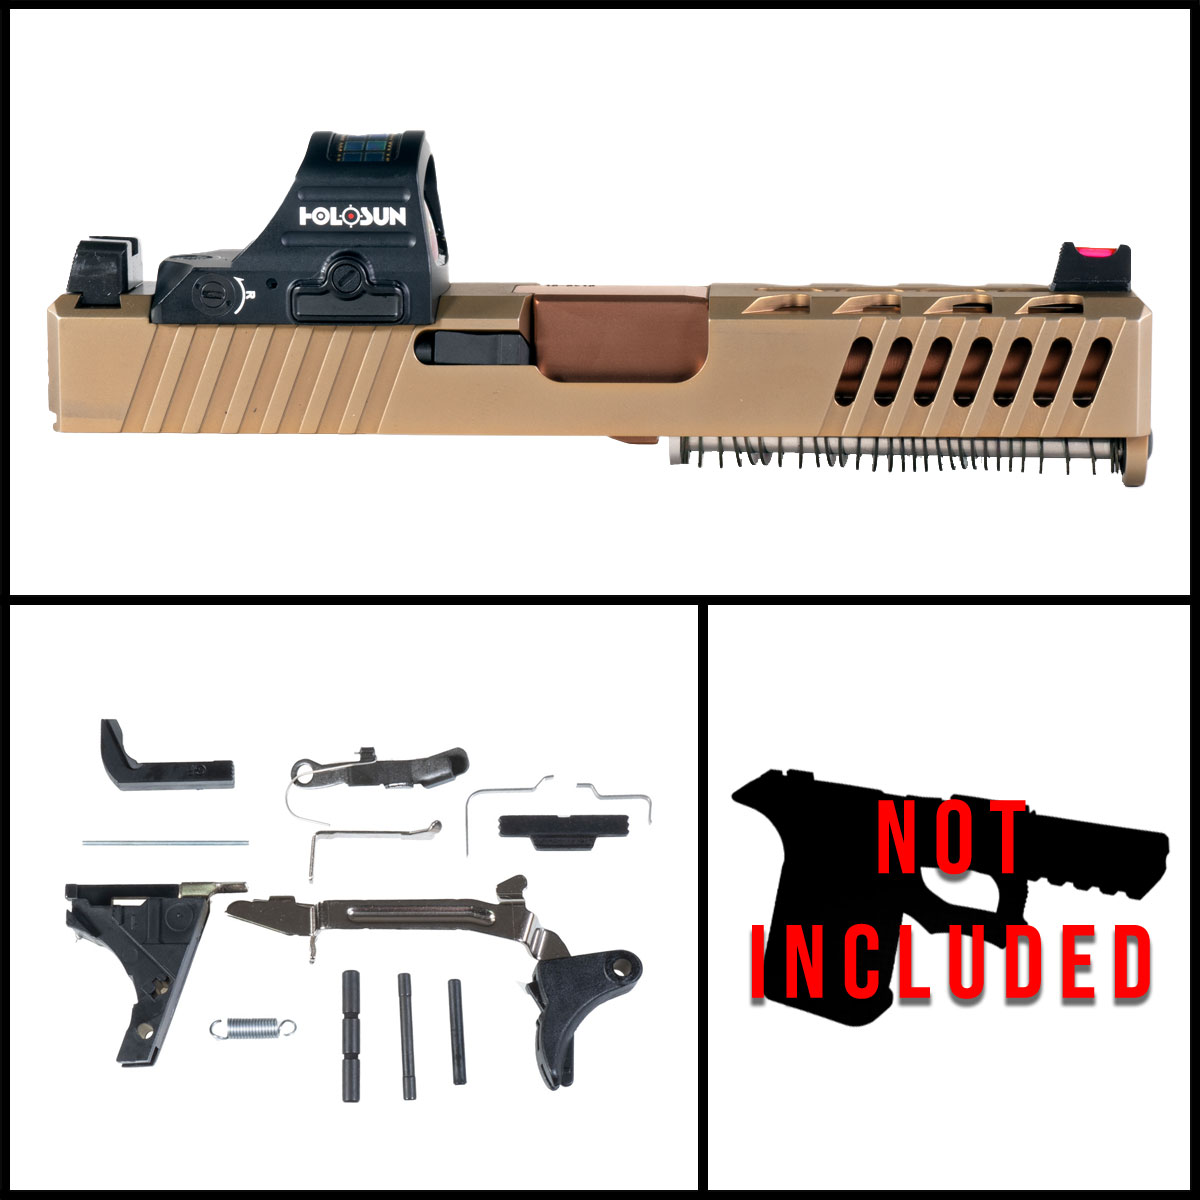 OTD 'Element 29' 9mm Full Pistol Build Kit (Everything Minus Frame) - Glock 19 Compatible